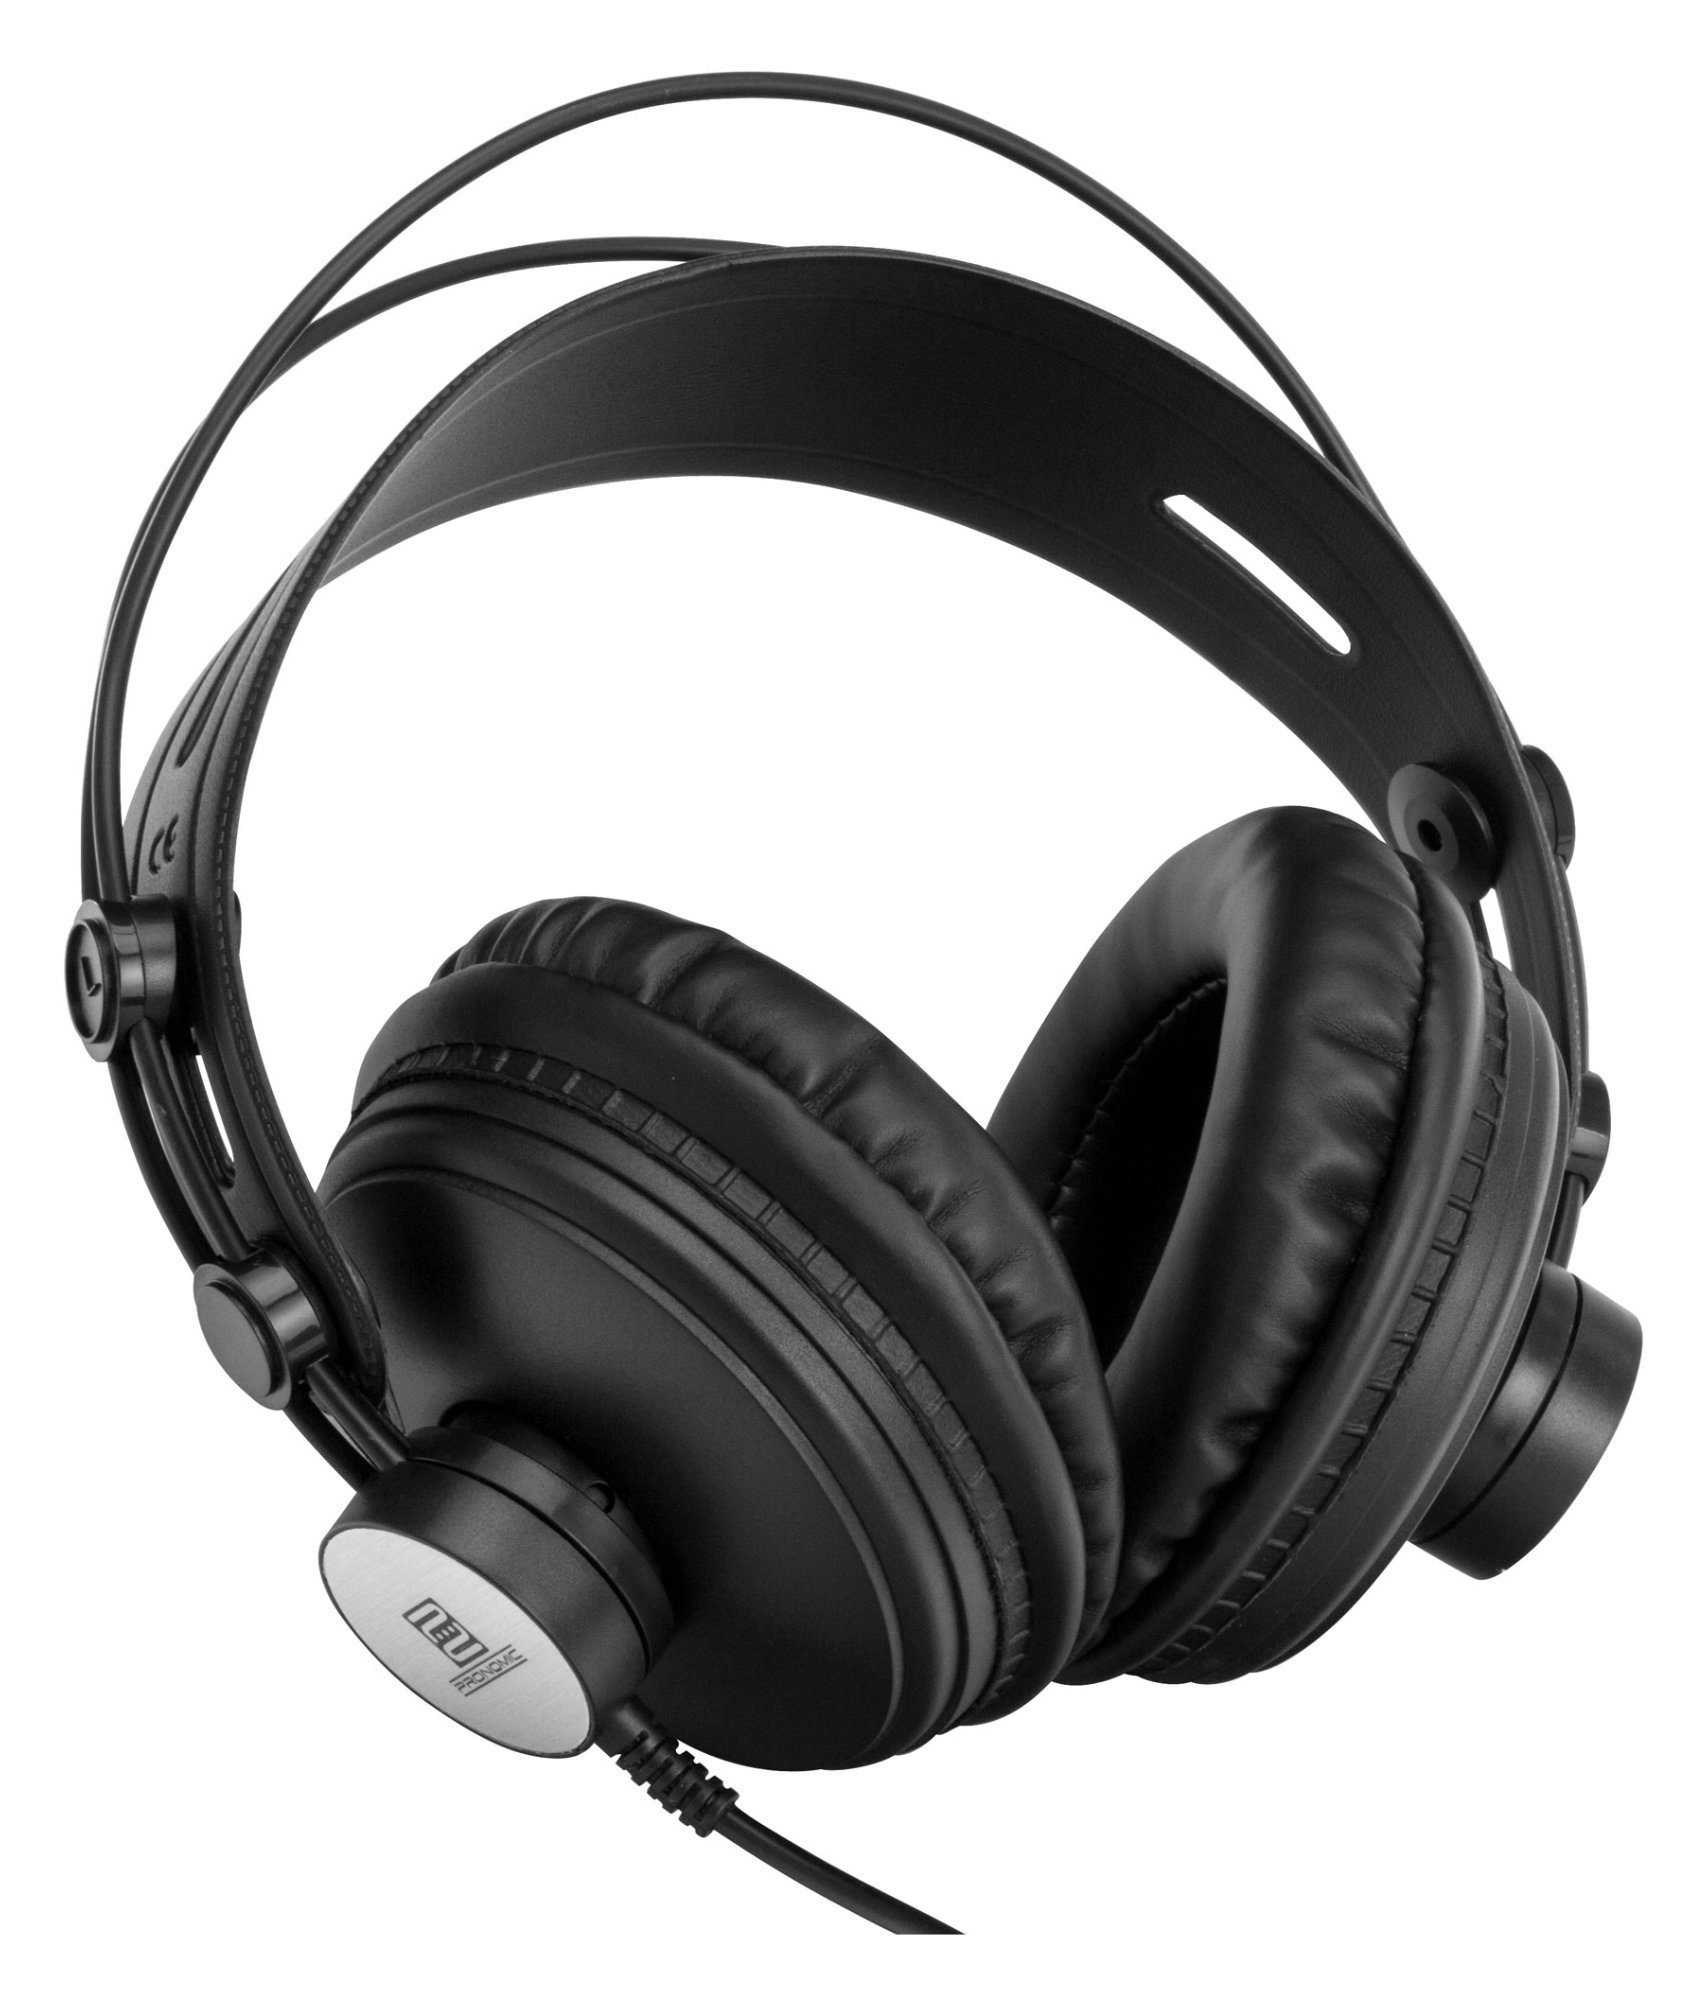 Höhen brillanten KH-900 Comfort und HiFi-Kopfhörer Bässen) Pronomic (Ausgewogener Klang mit präzisen